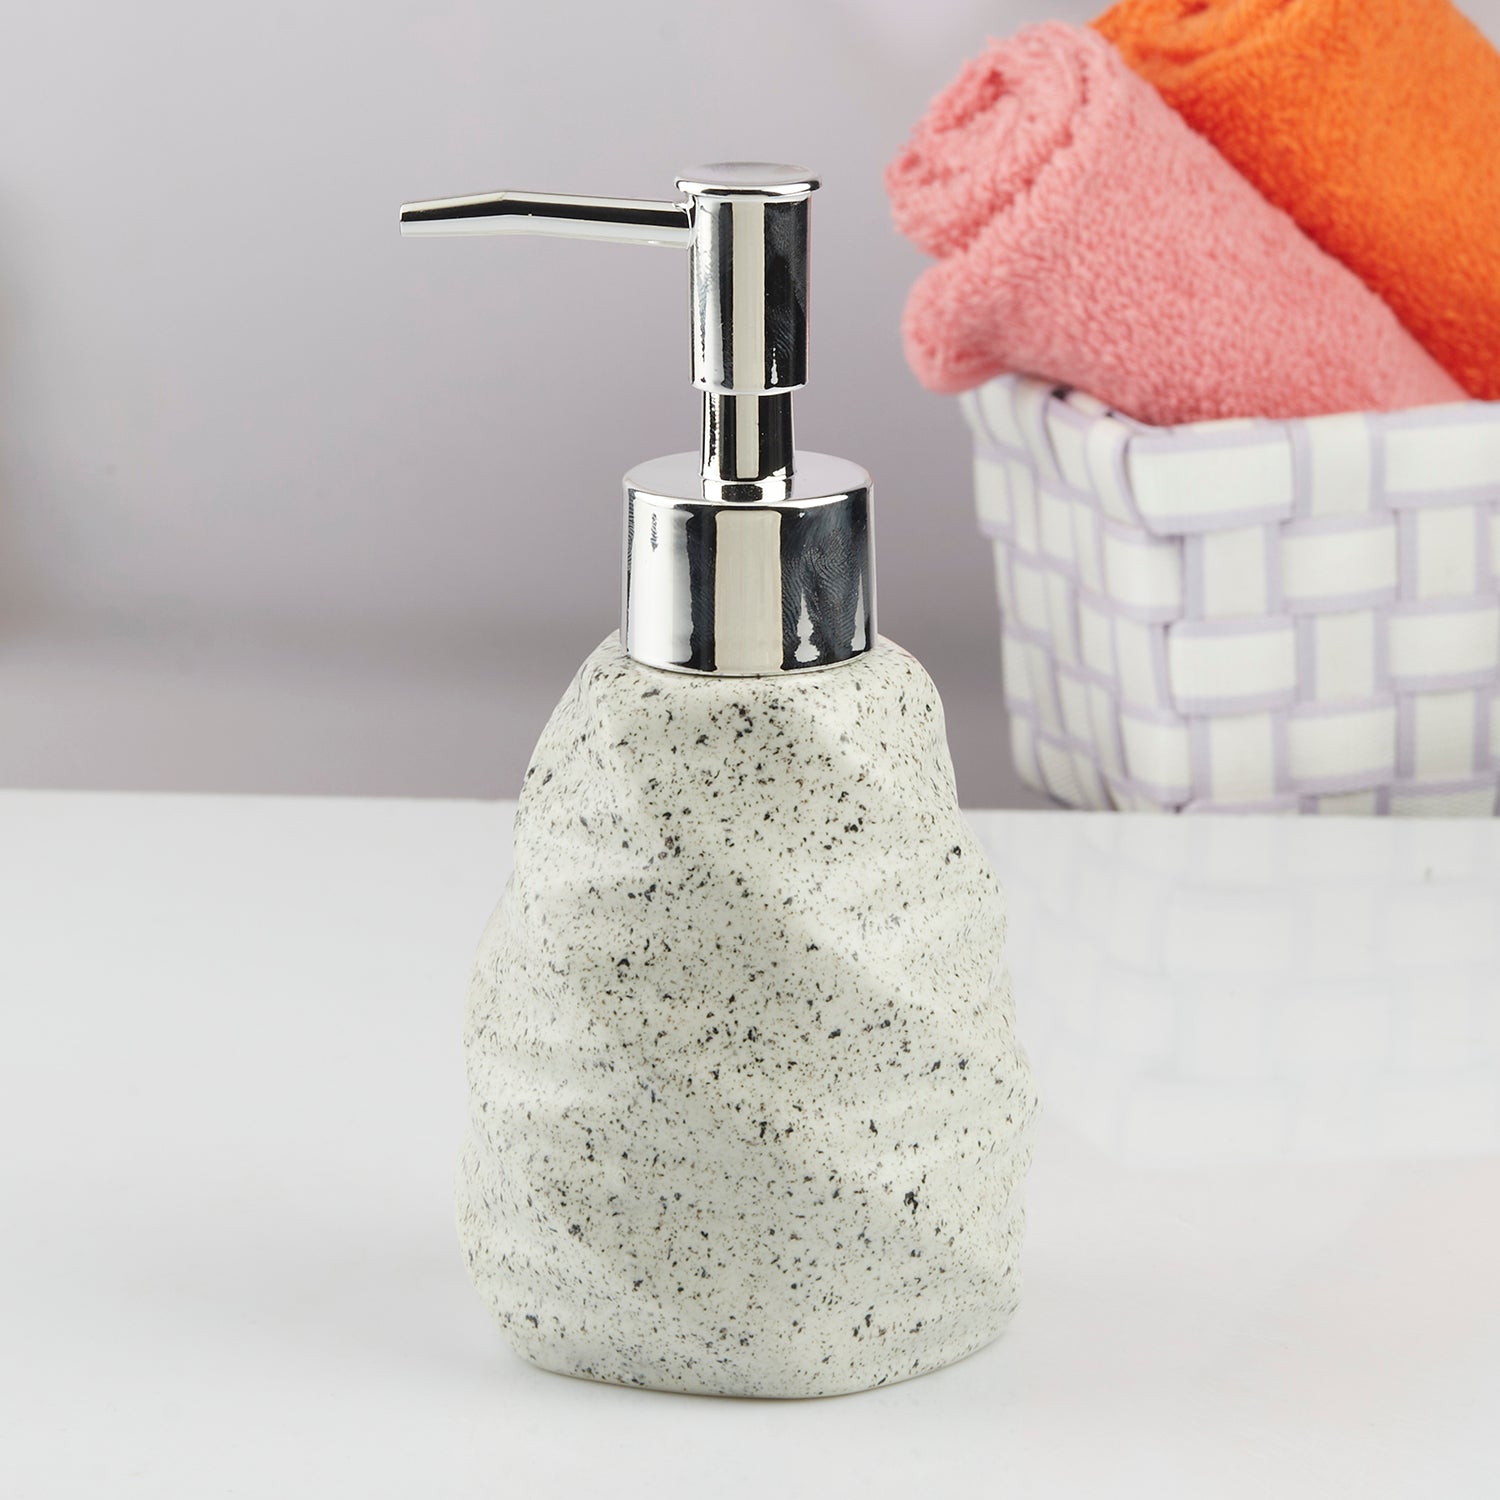 Ceramic Soap Dispenser liquid handwash pump for Bathroom, Set of 1, White (10738)